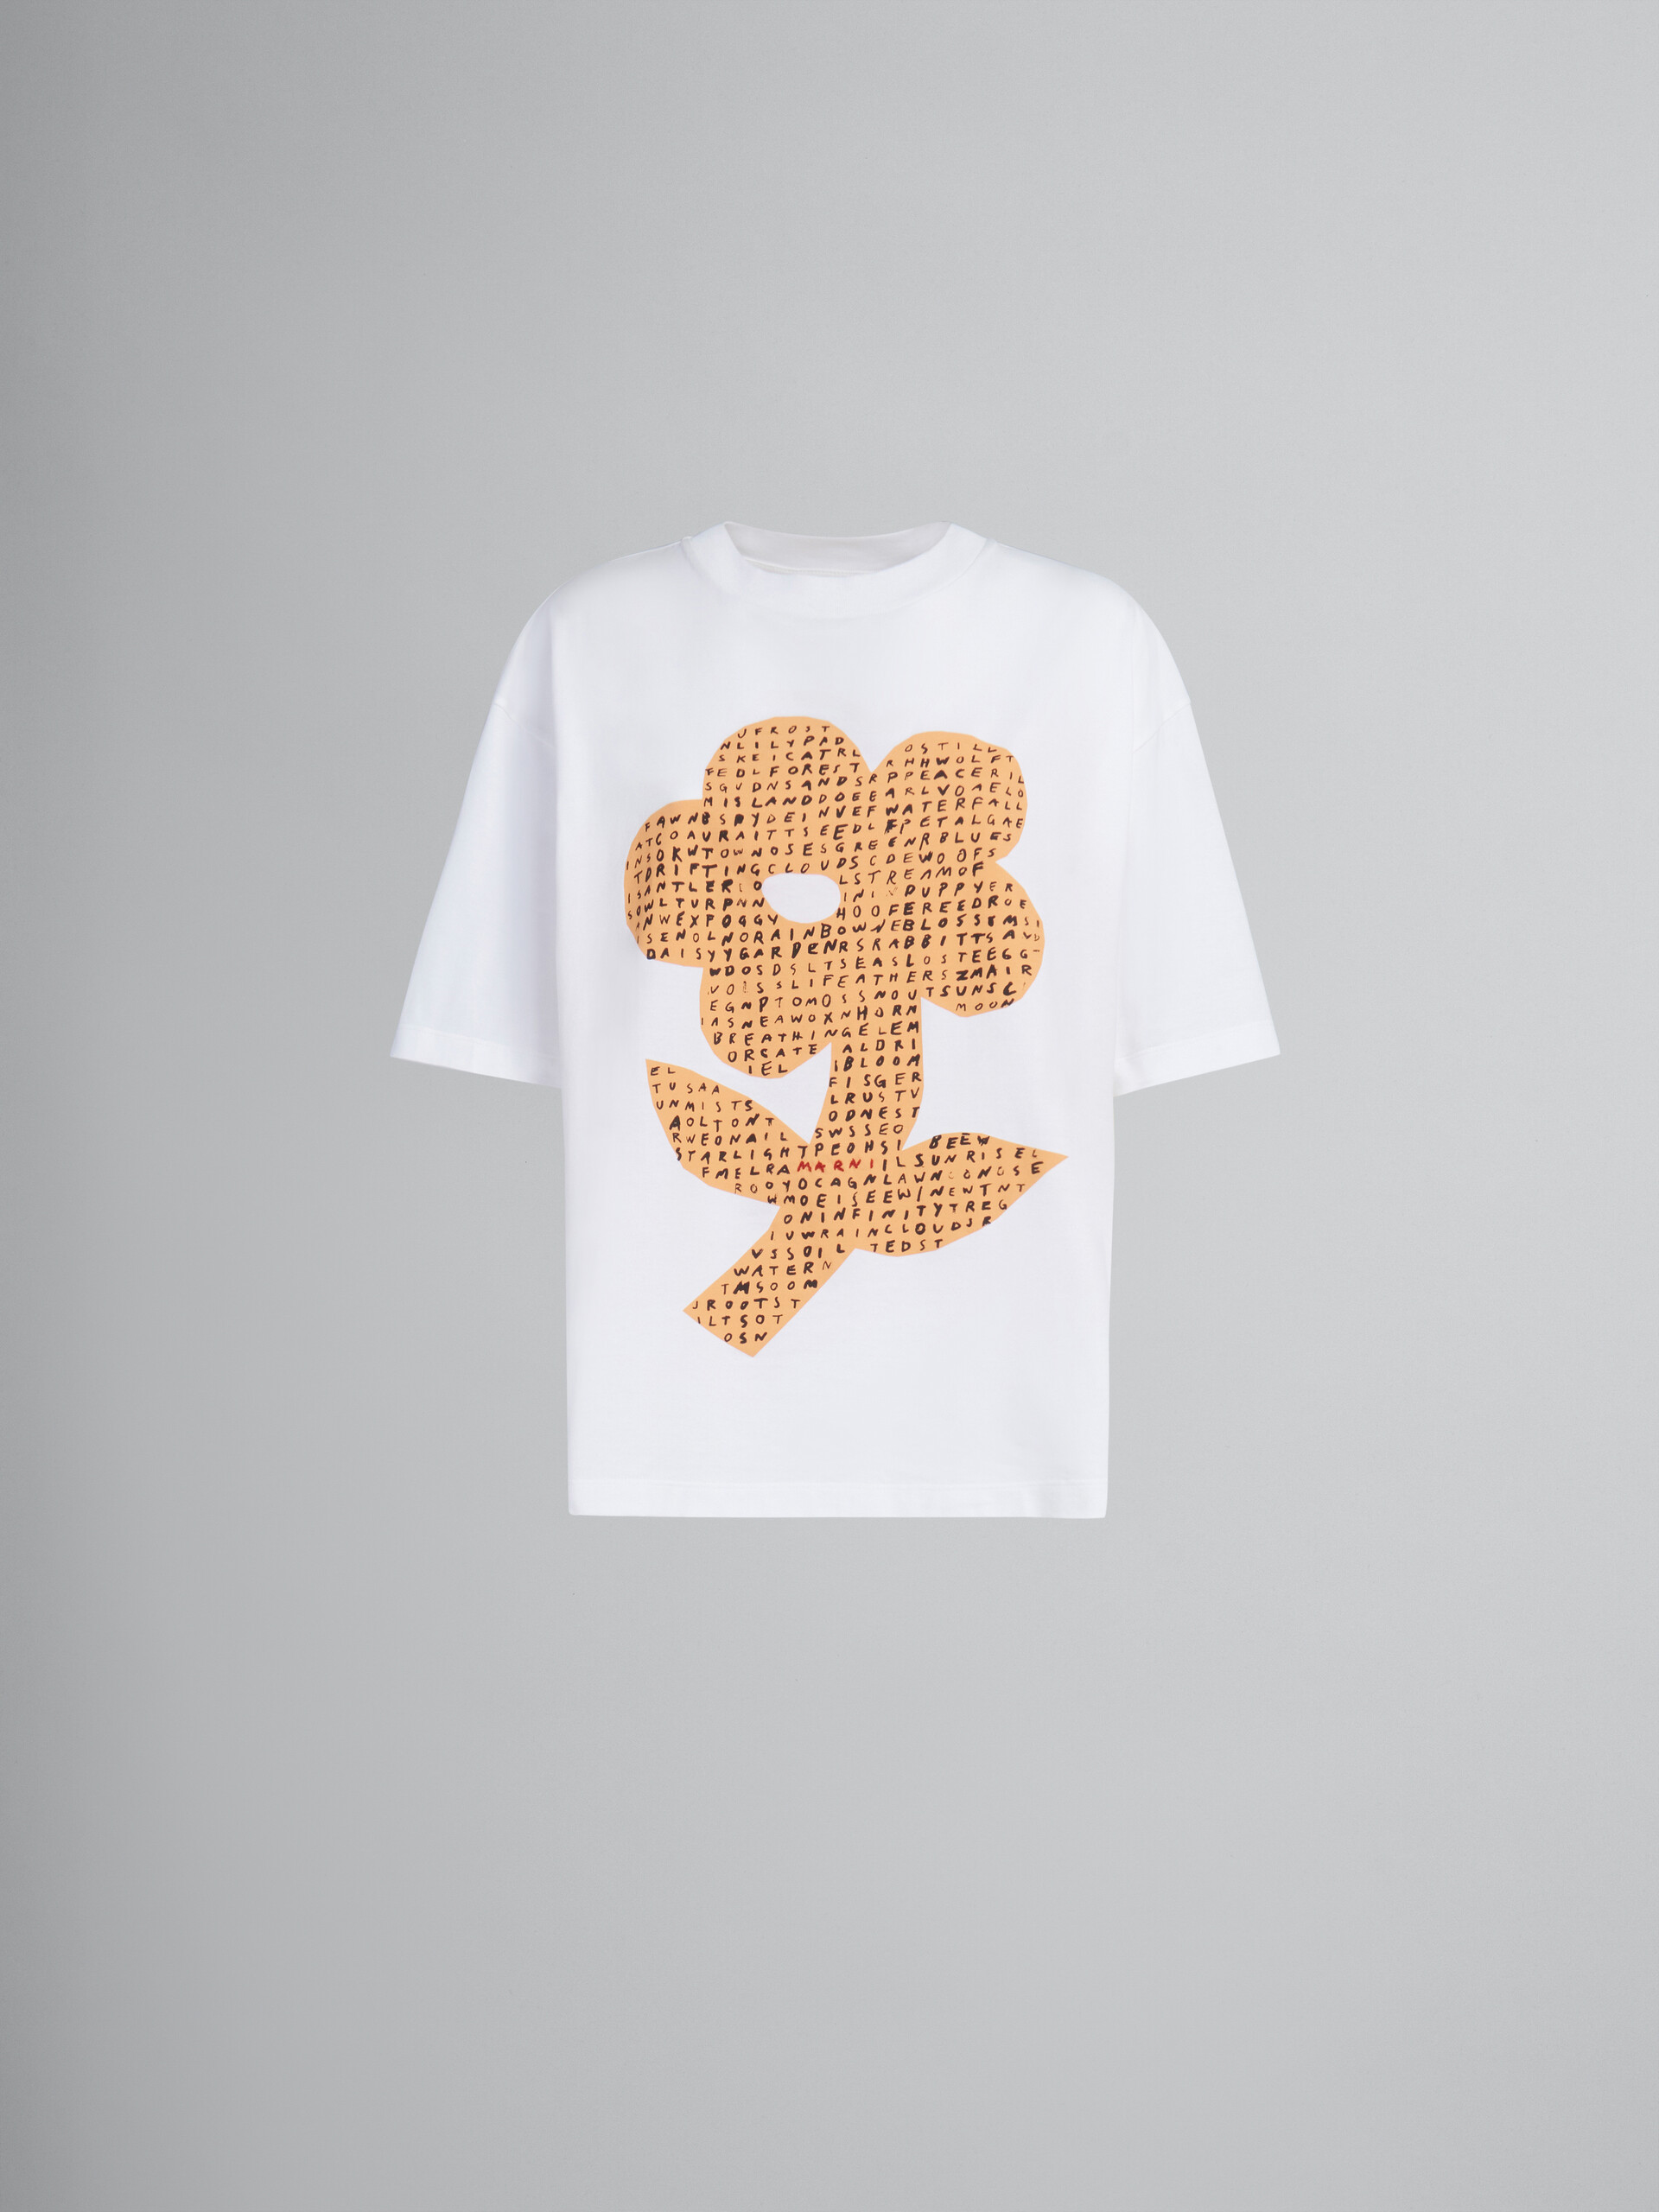 ホワイト wordsearchフラワープリント オーガニックコットン製Tシャツ - Tシャツ - Image 1